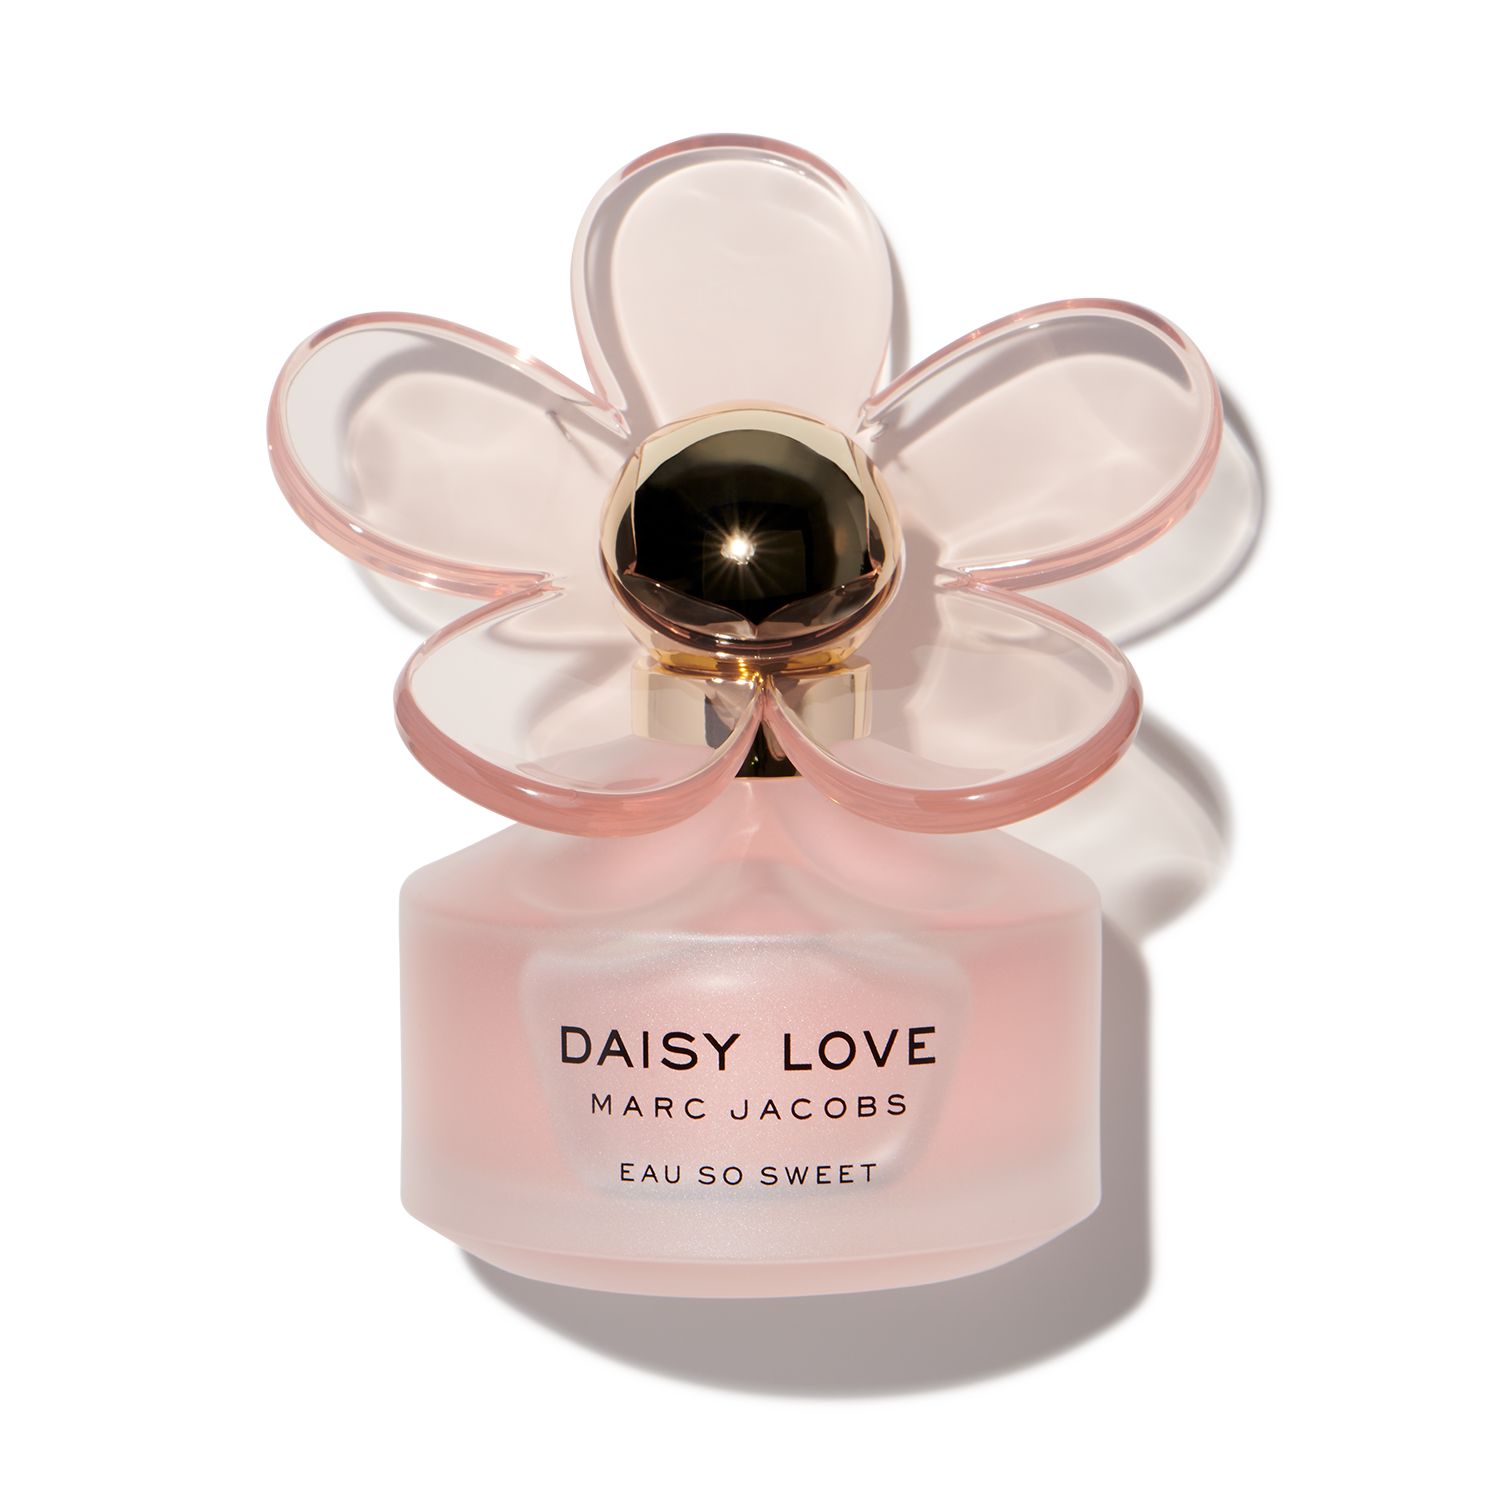 Daisy Love Eau So Sweet Marc Jacobs perfume - a fragrance for